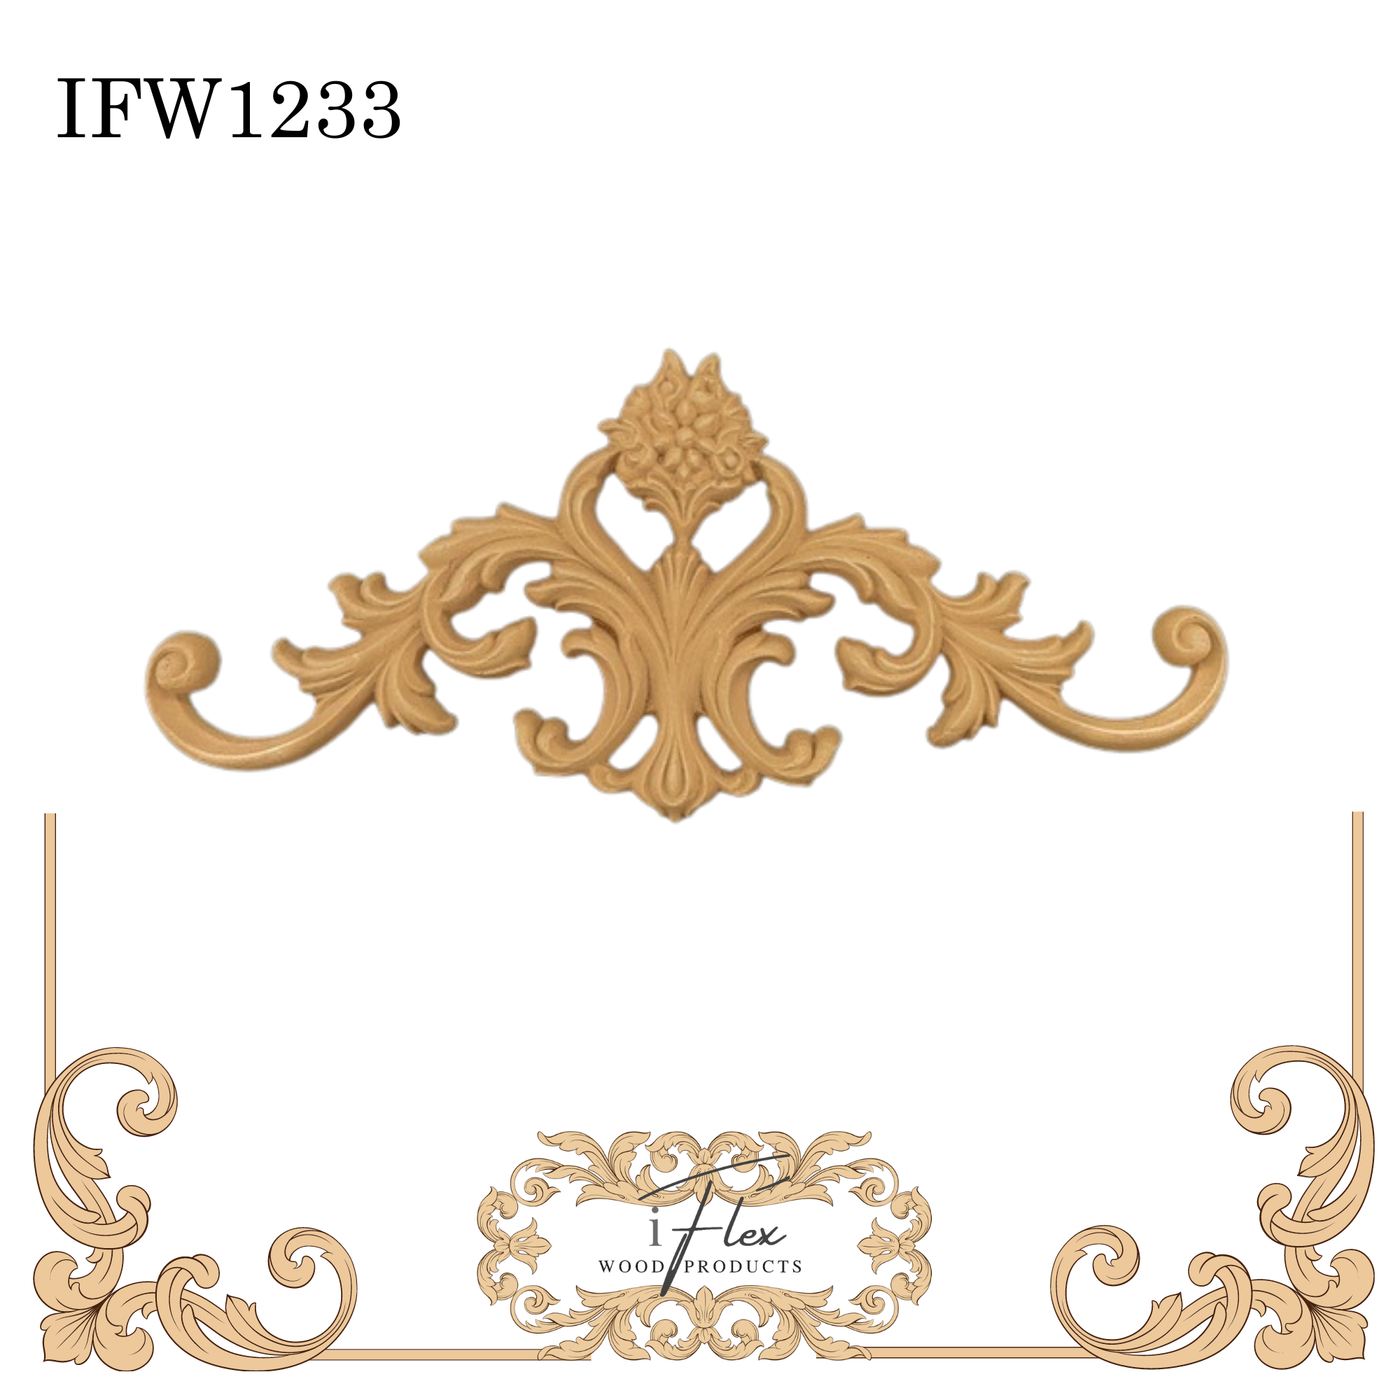 IFW 1233